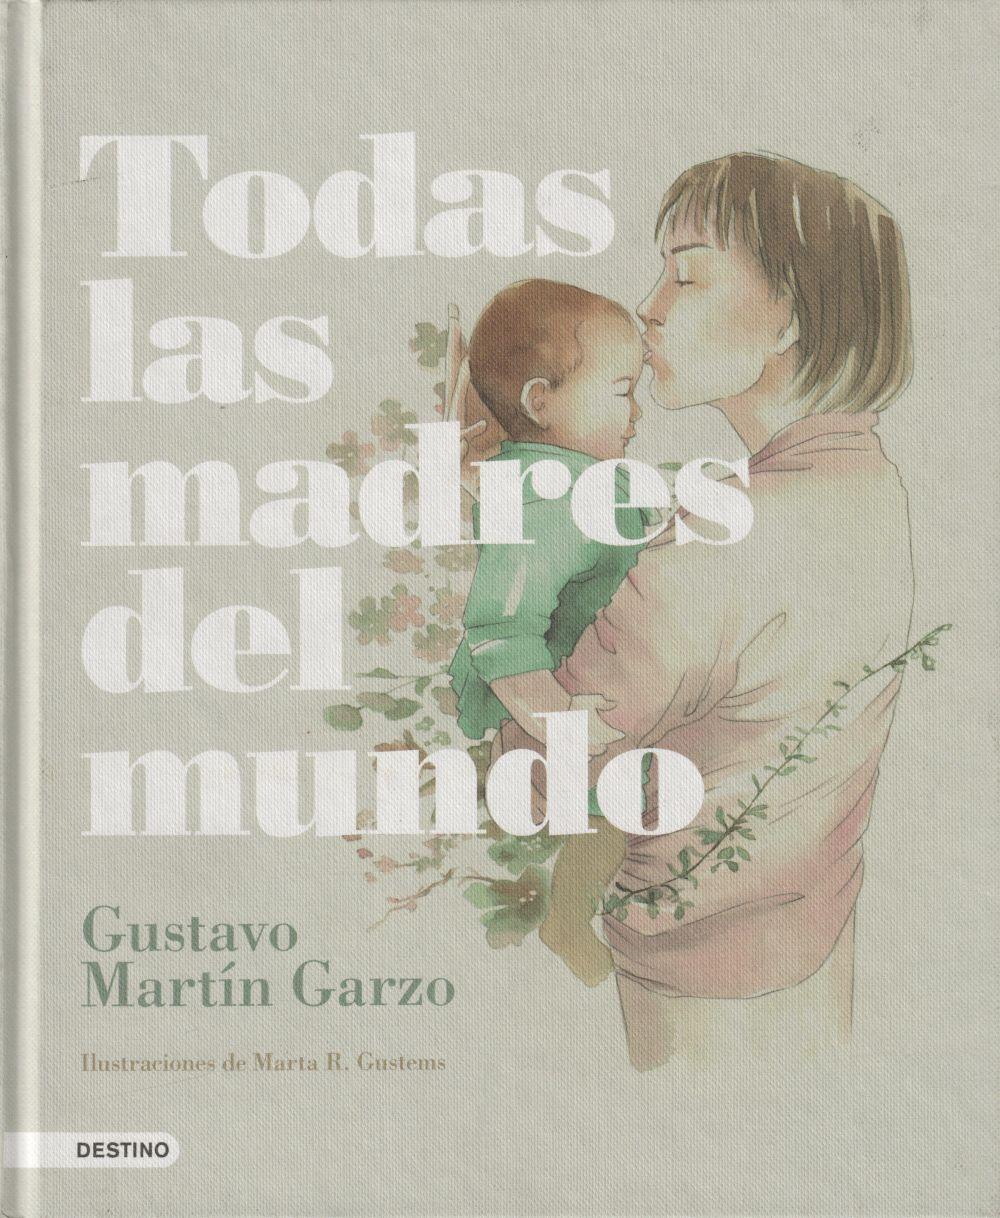 Todas las madres del mundo  Gustavo Martín Garzo  Buch  Spanisch  2018 - Martín Garzo, Gustavo